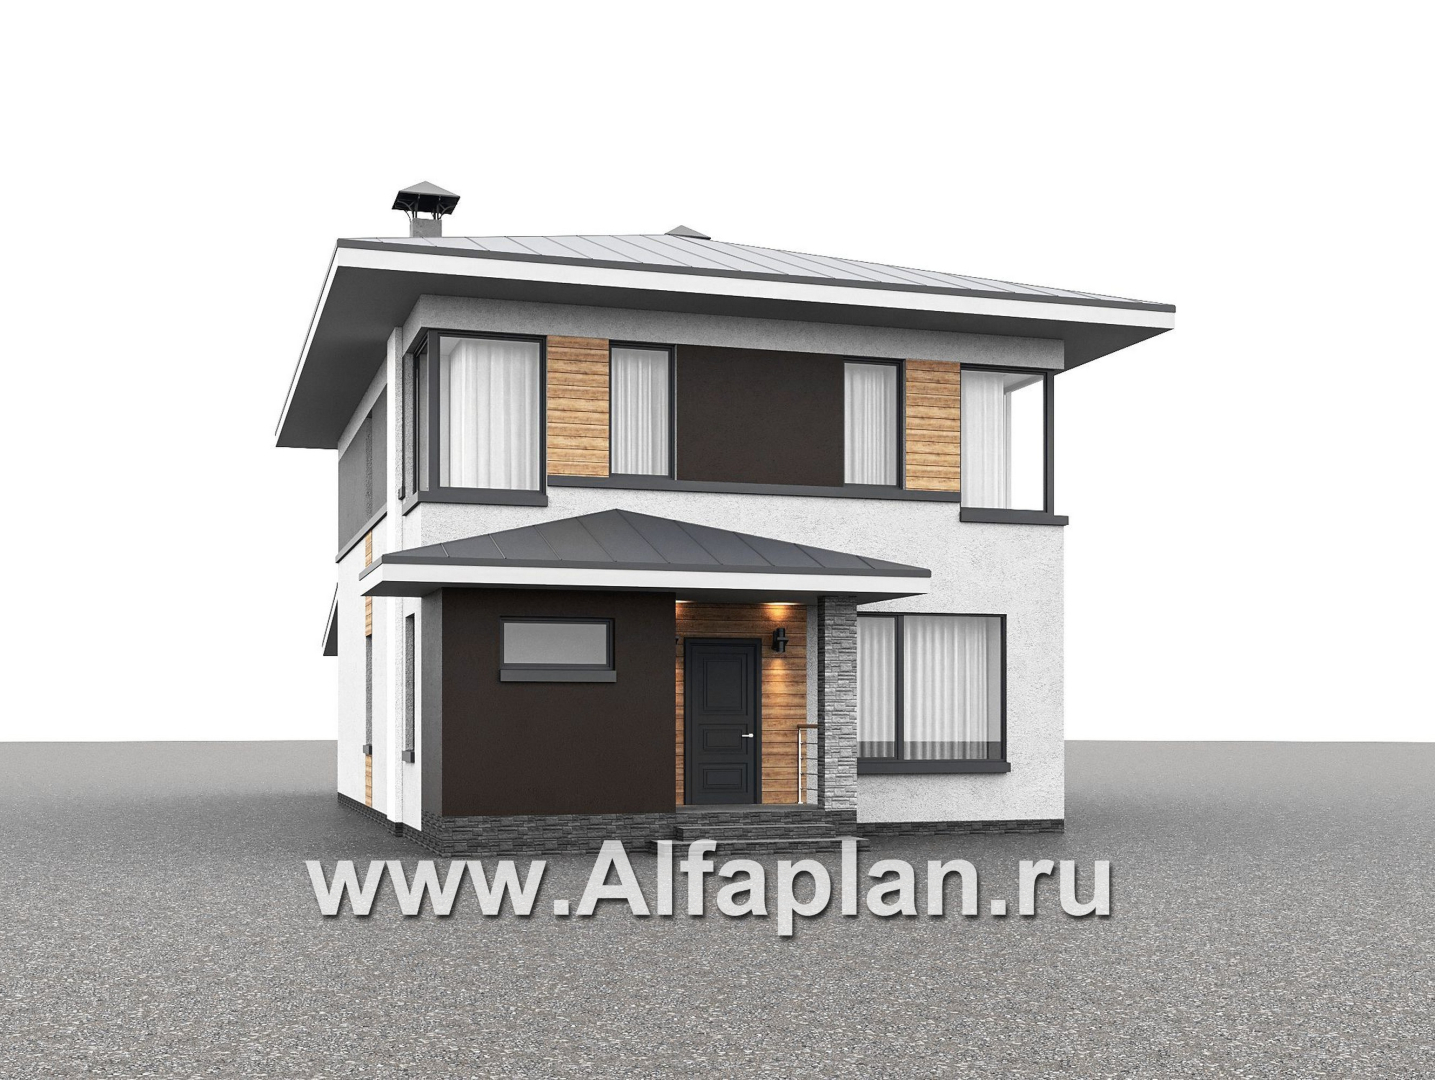 Проекты домов Альфаплан - "Генезис" - проект дома, 2 этажа, с остекленной террасой в стиле Райта - дополнительное изображение №1